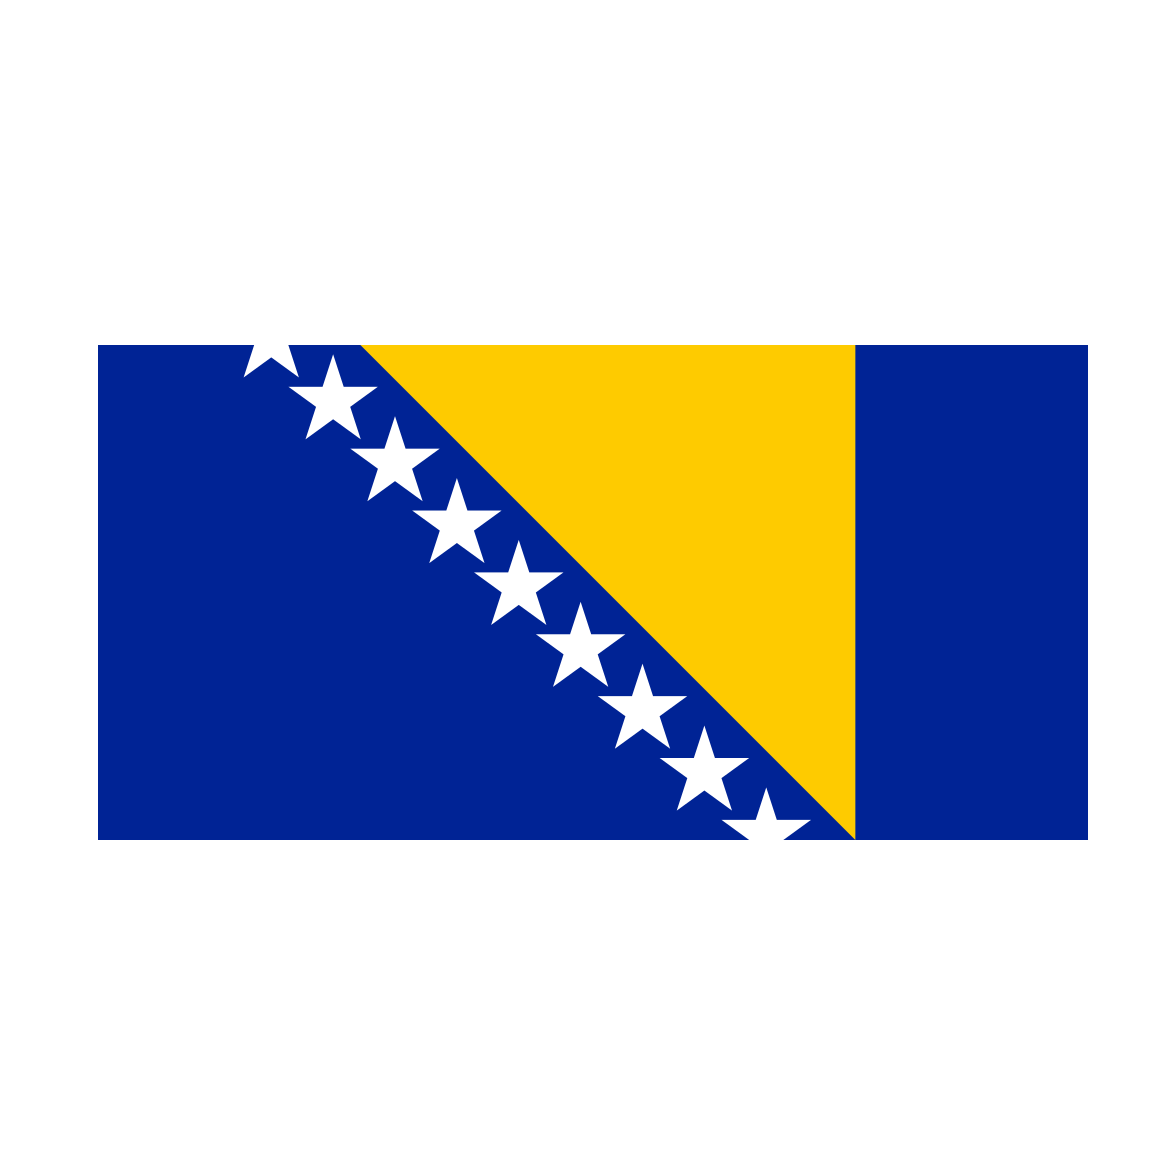 Bosnia And Herzegovina Flag PNG Image in Transparent pngteam.com